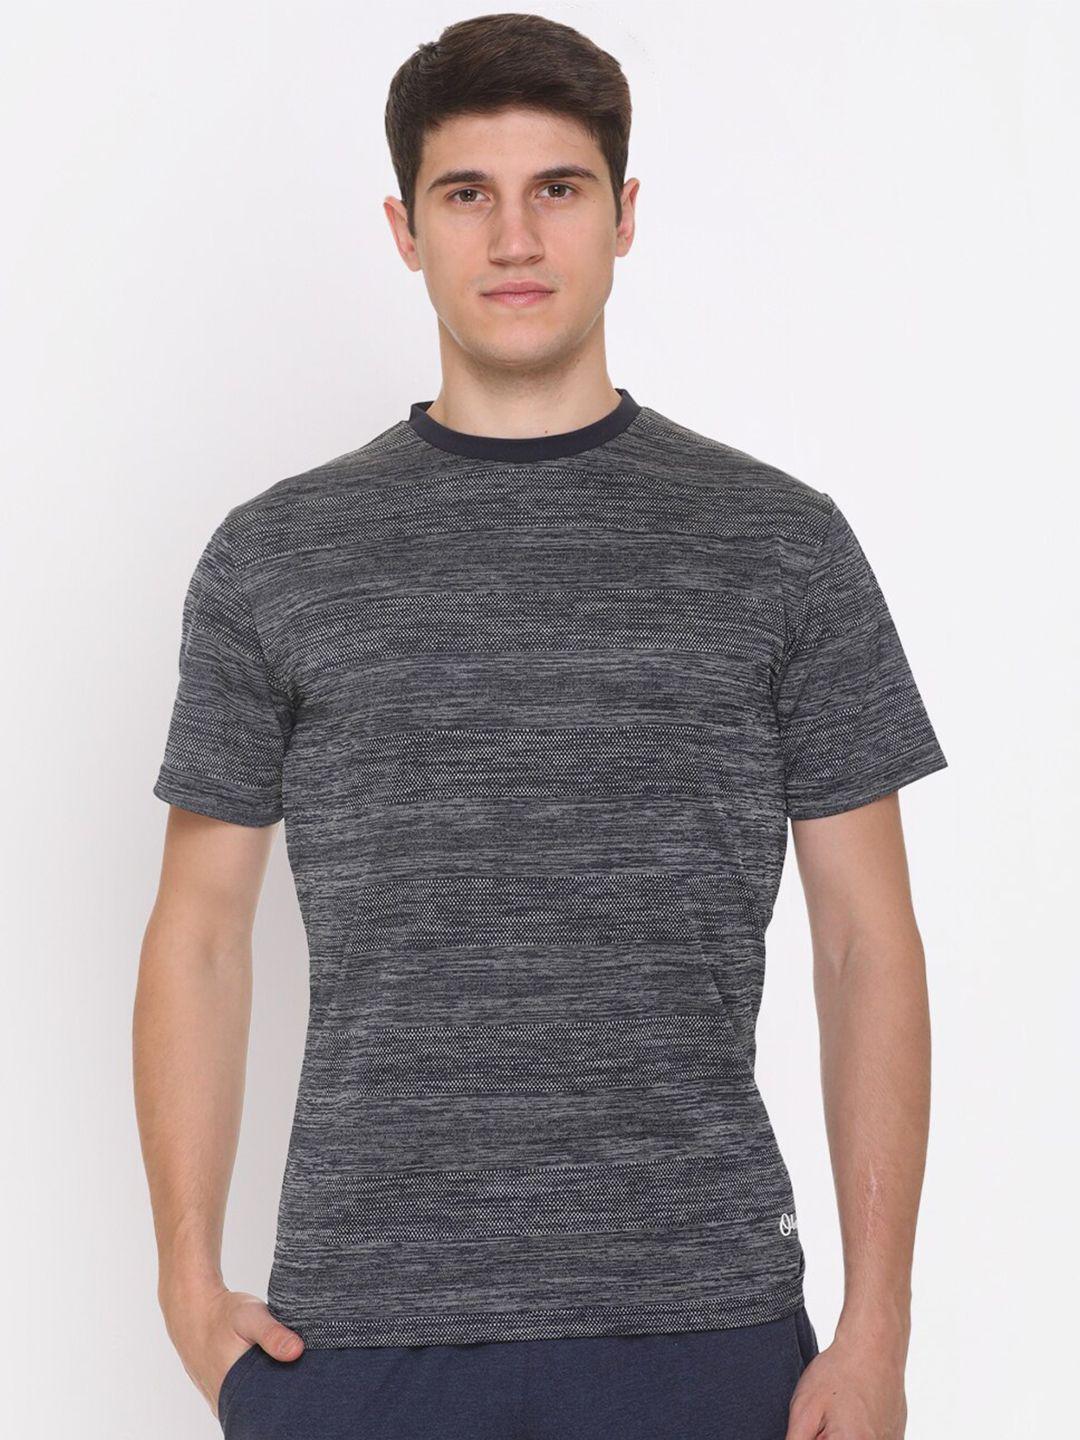 obaan men grey printed t-shirt